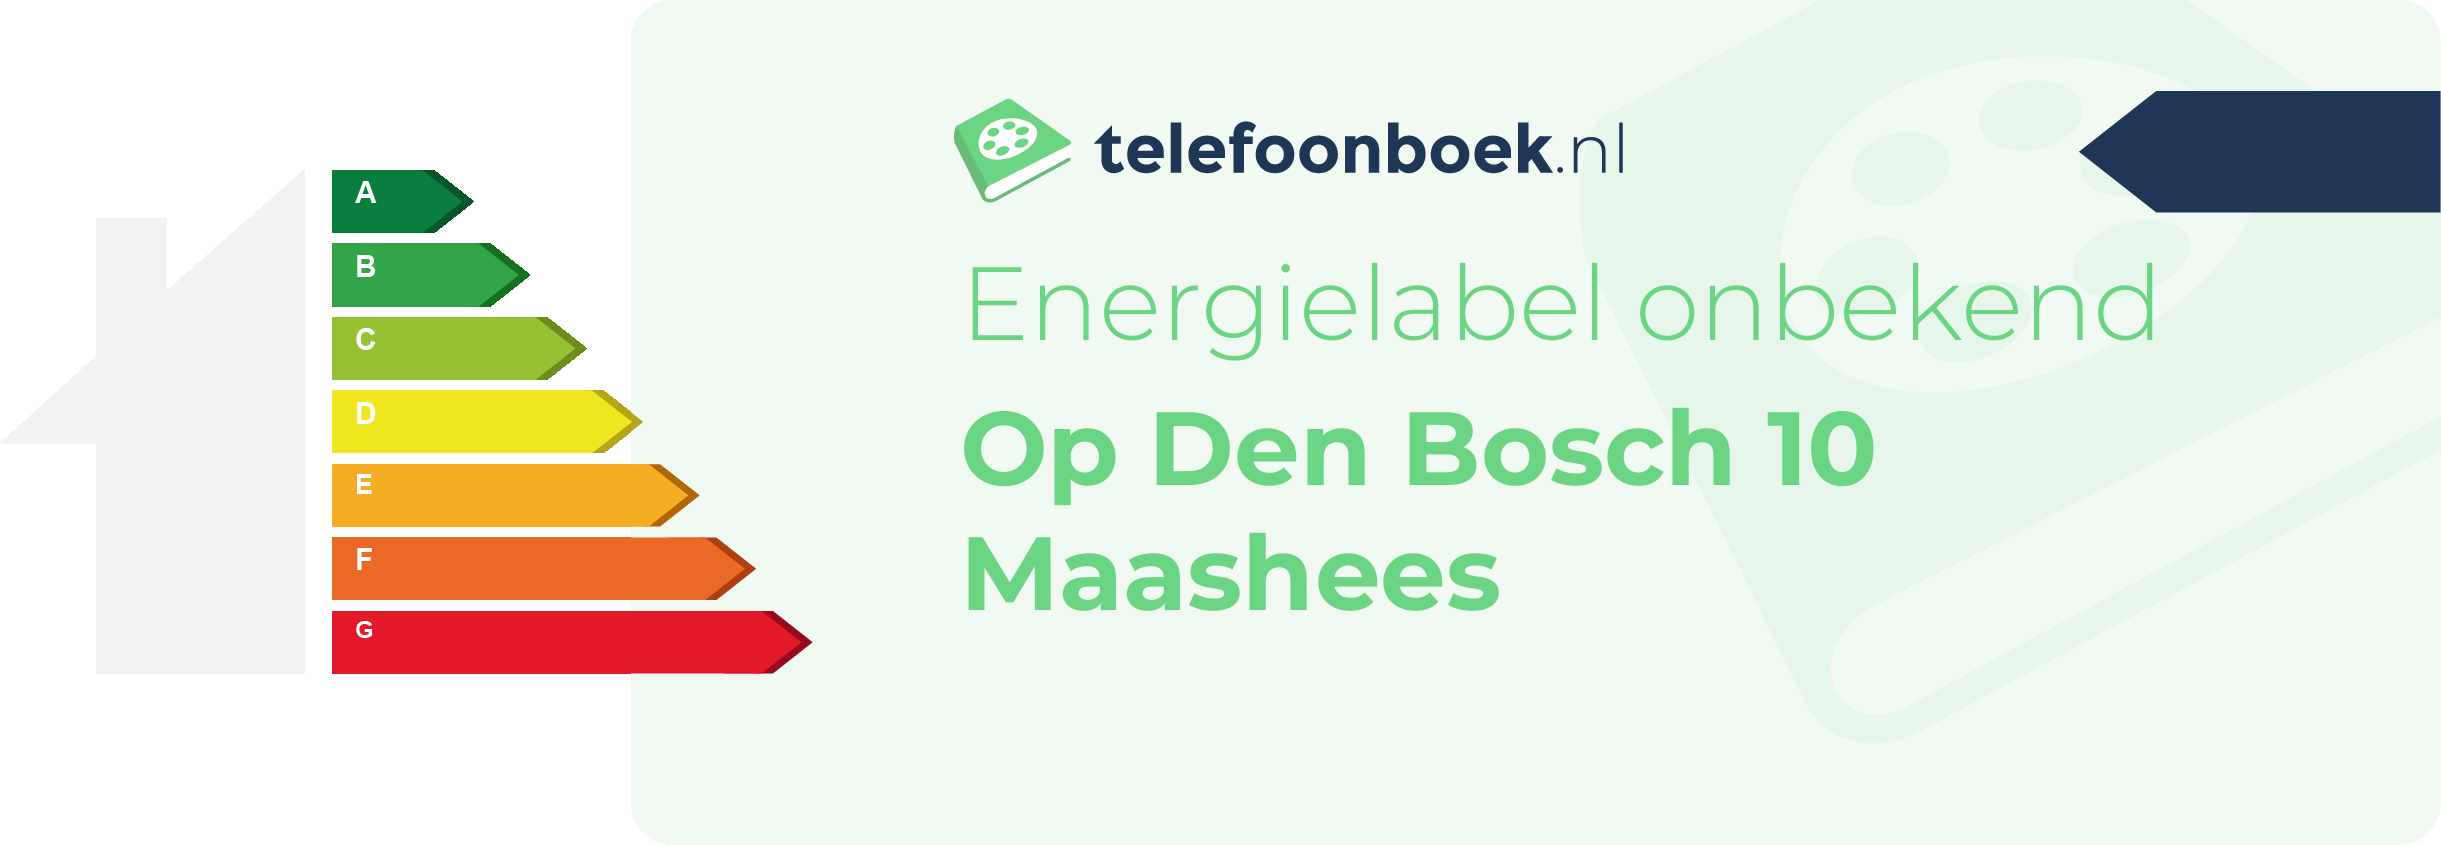 Energielabel Op Den Bosch 10 Maashees